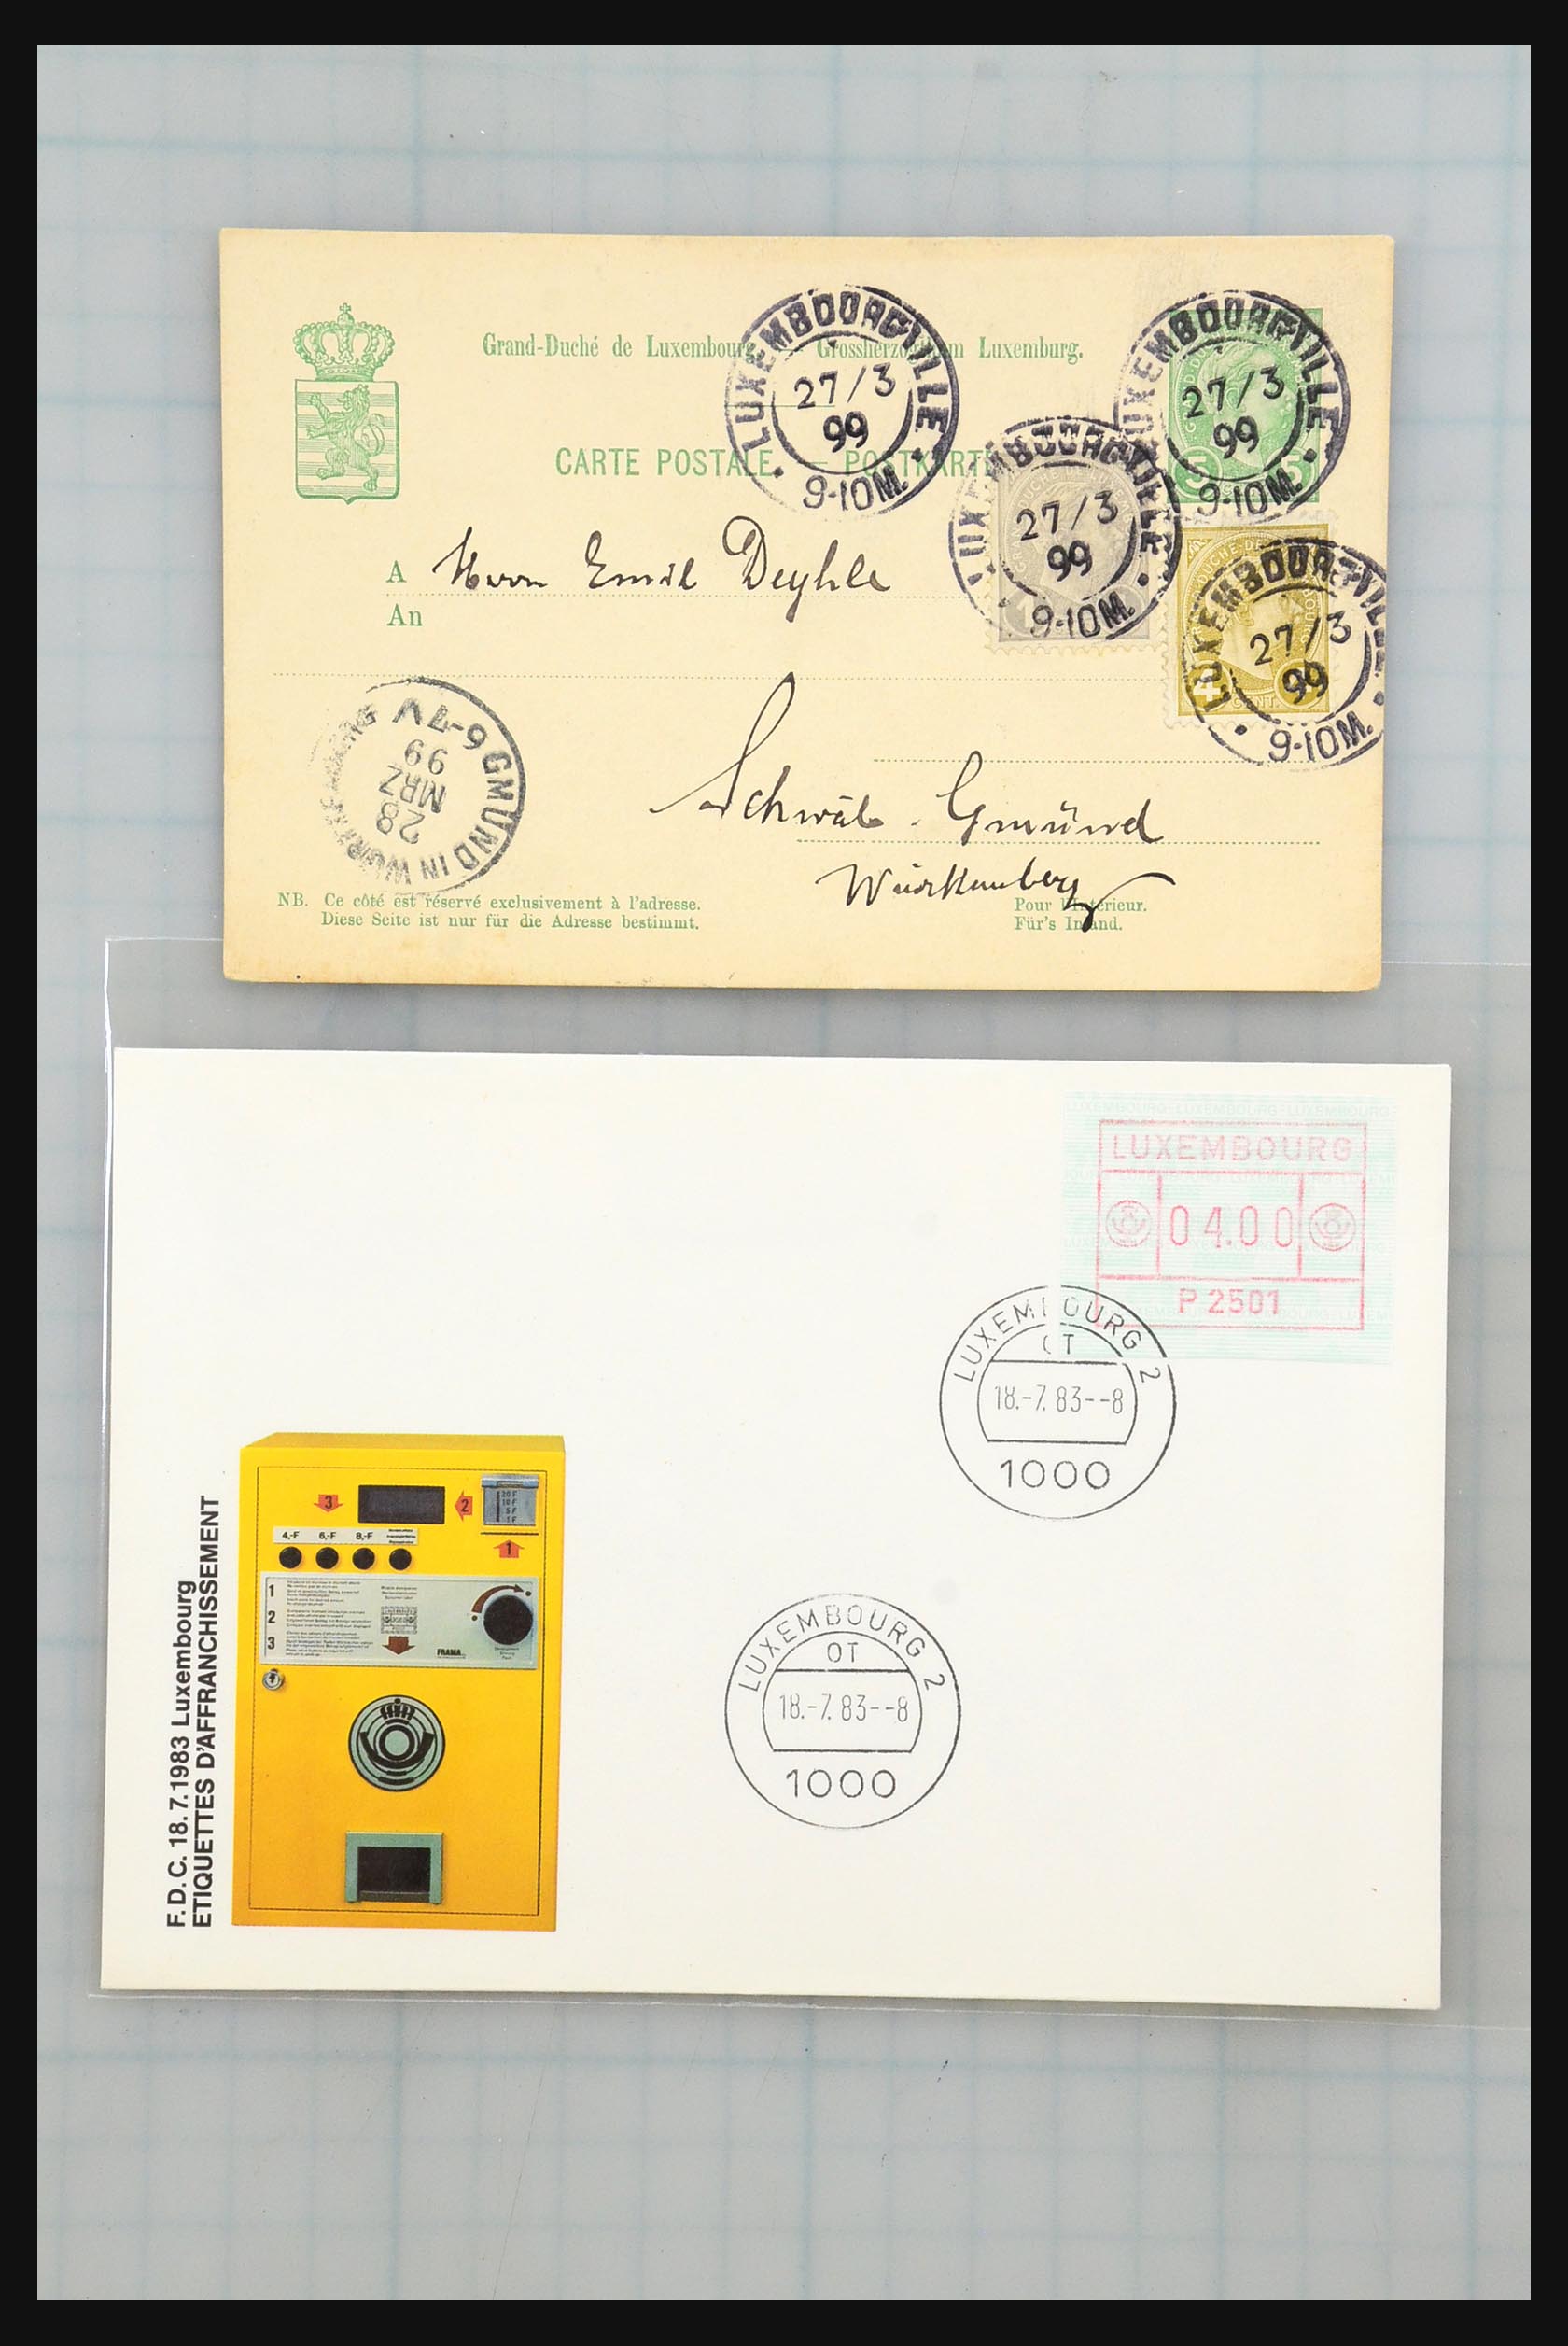 31358 002 - 31358 Portugal/Luxemburg/Griekenland brieven 1880-1960.